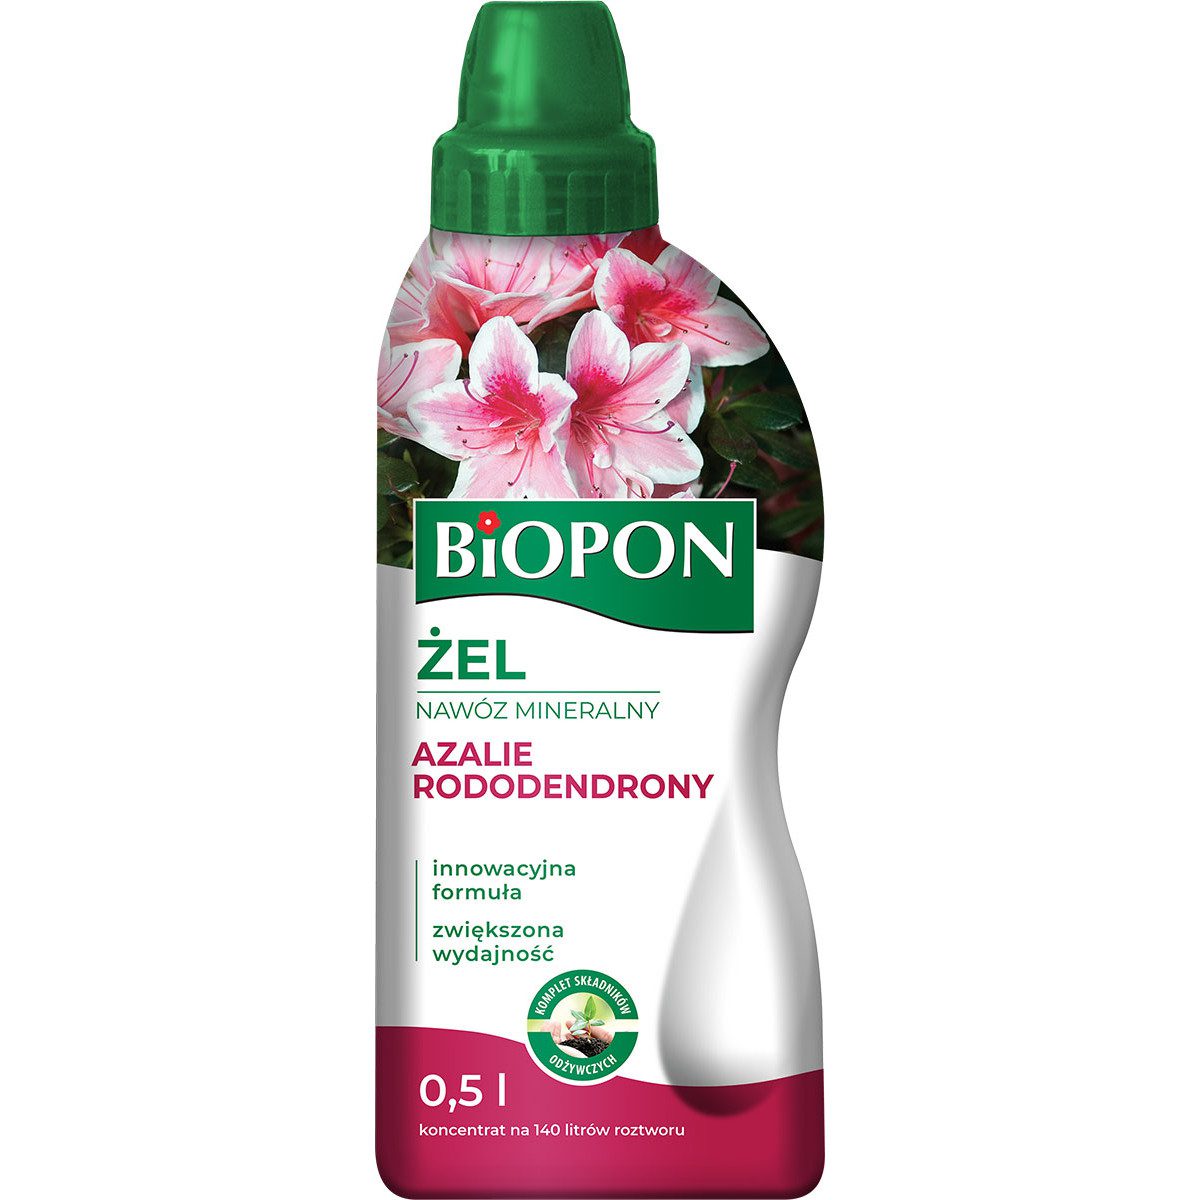 Biopon ŻEL nawóz mineralny do rododendronów, azalii i różaneczników